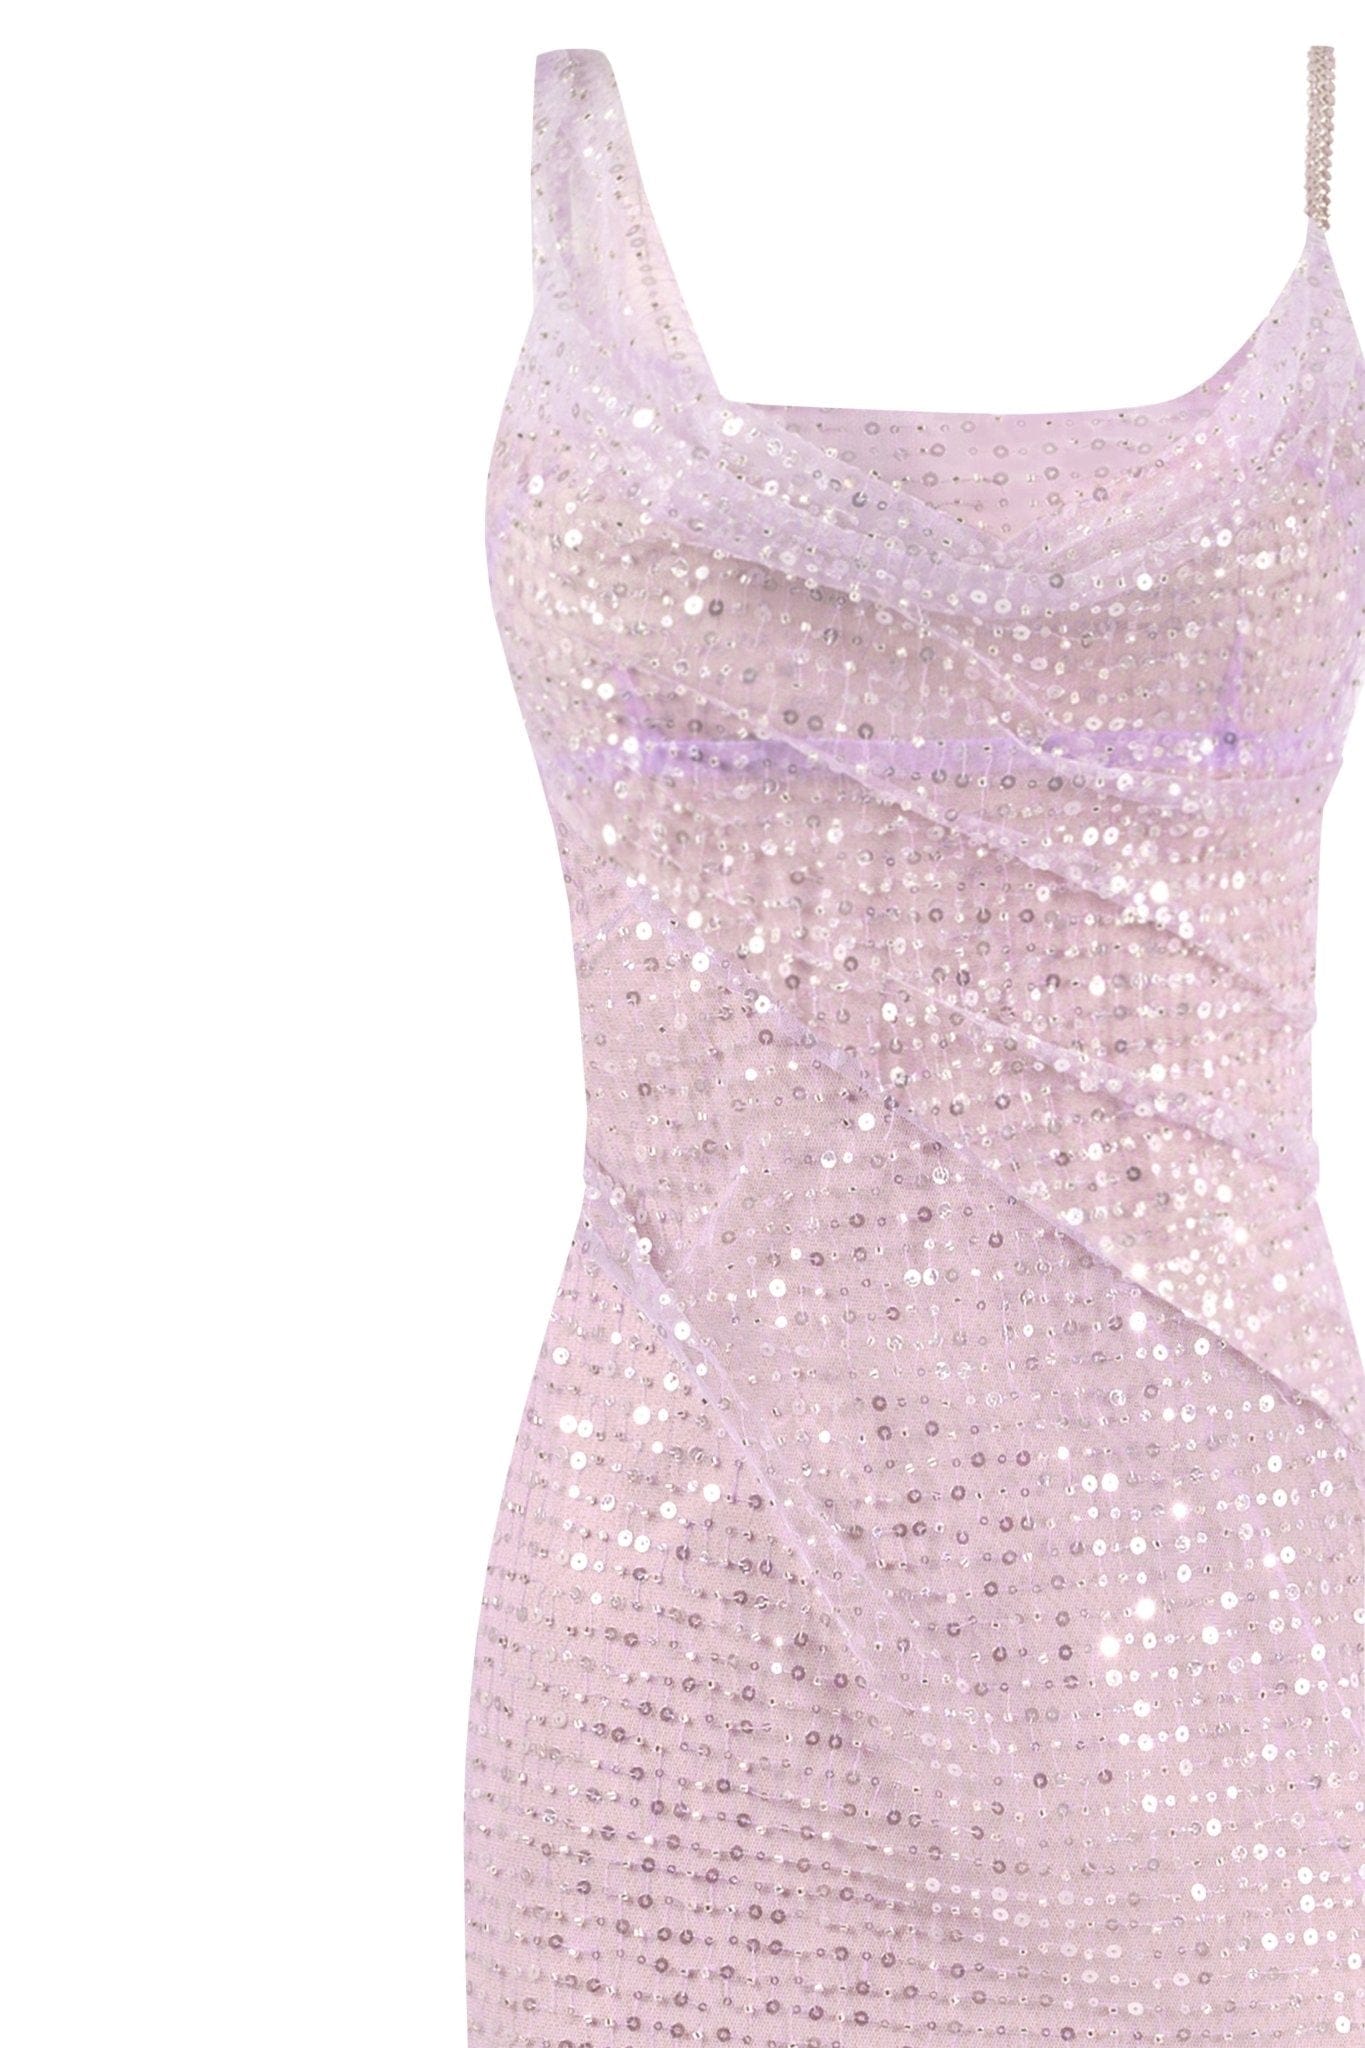 Gala lavender glittering maxi dress - Milla